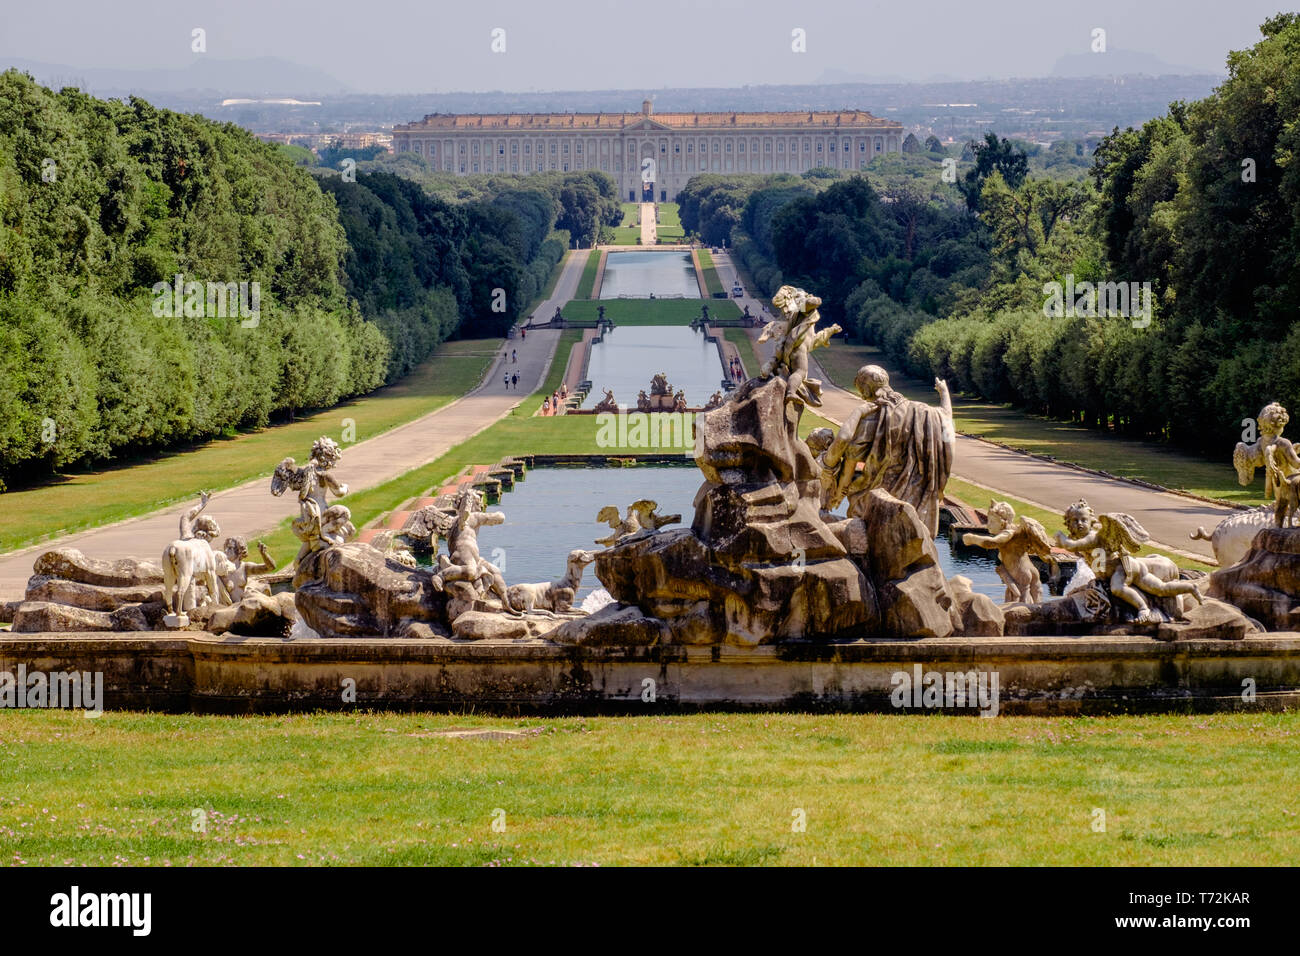 Il 'Reggia di Caserta', in background è un ex palazzo reale. Il grande giardino è di 3 chilometri di lunghezza e presenta sculture e canali. Foto Stock